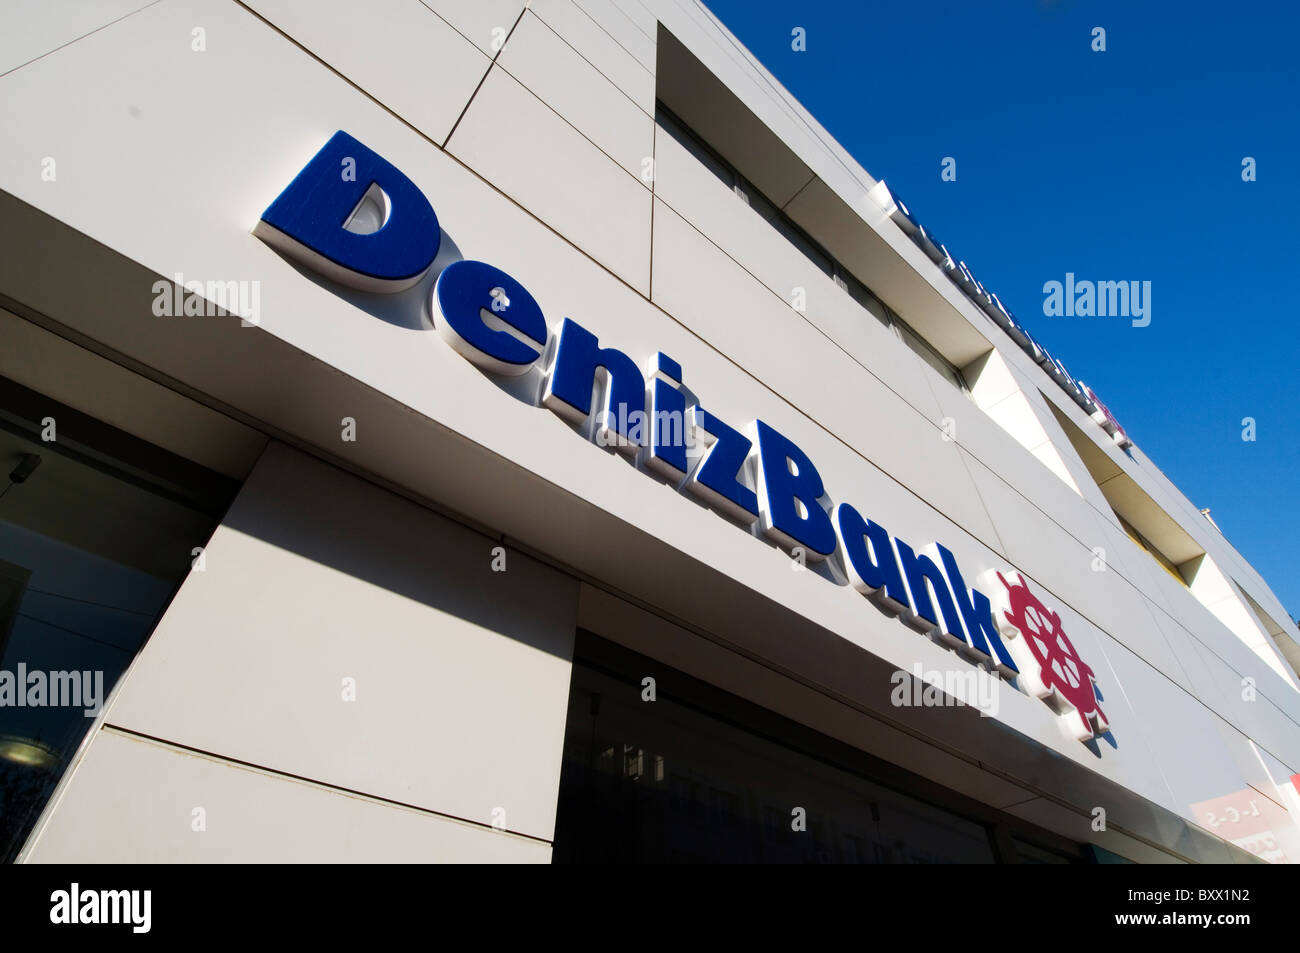 Deniz Bank bancos banco turco denizbank Turquía sector bancario Foto de stock